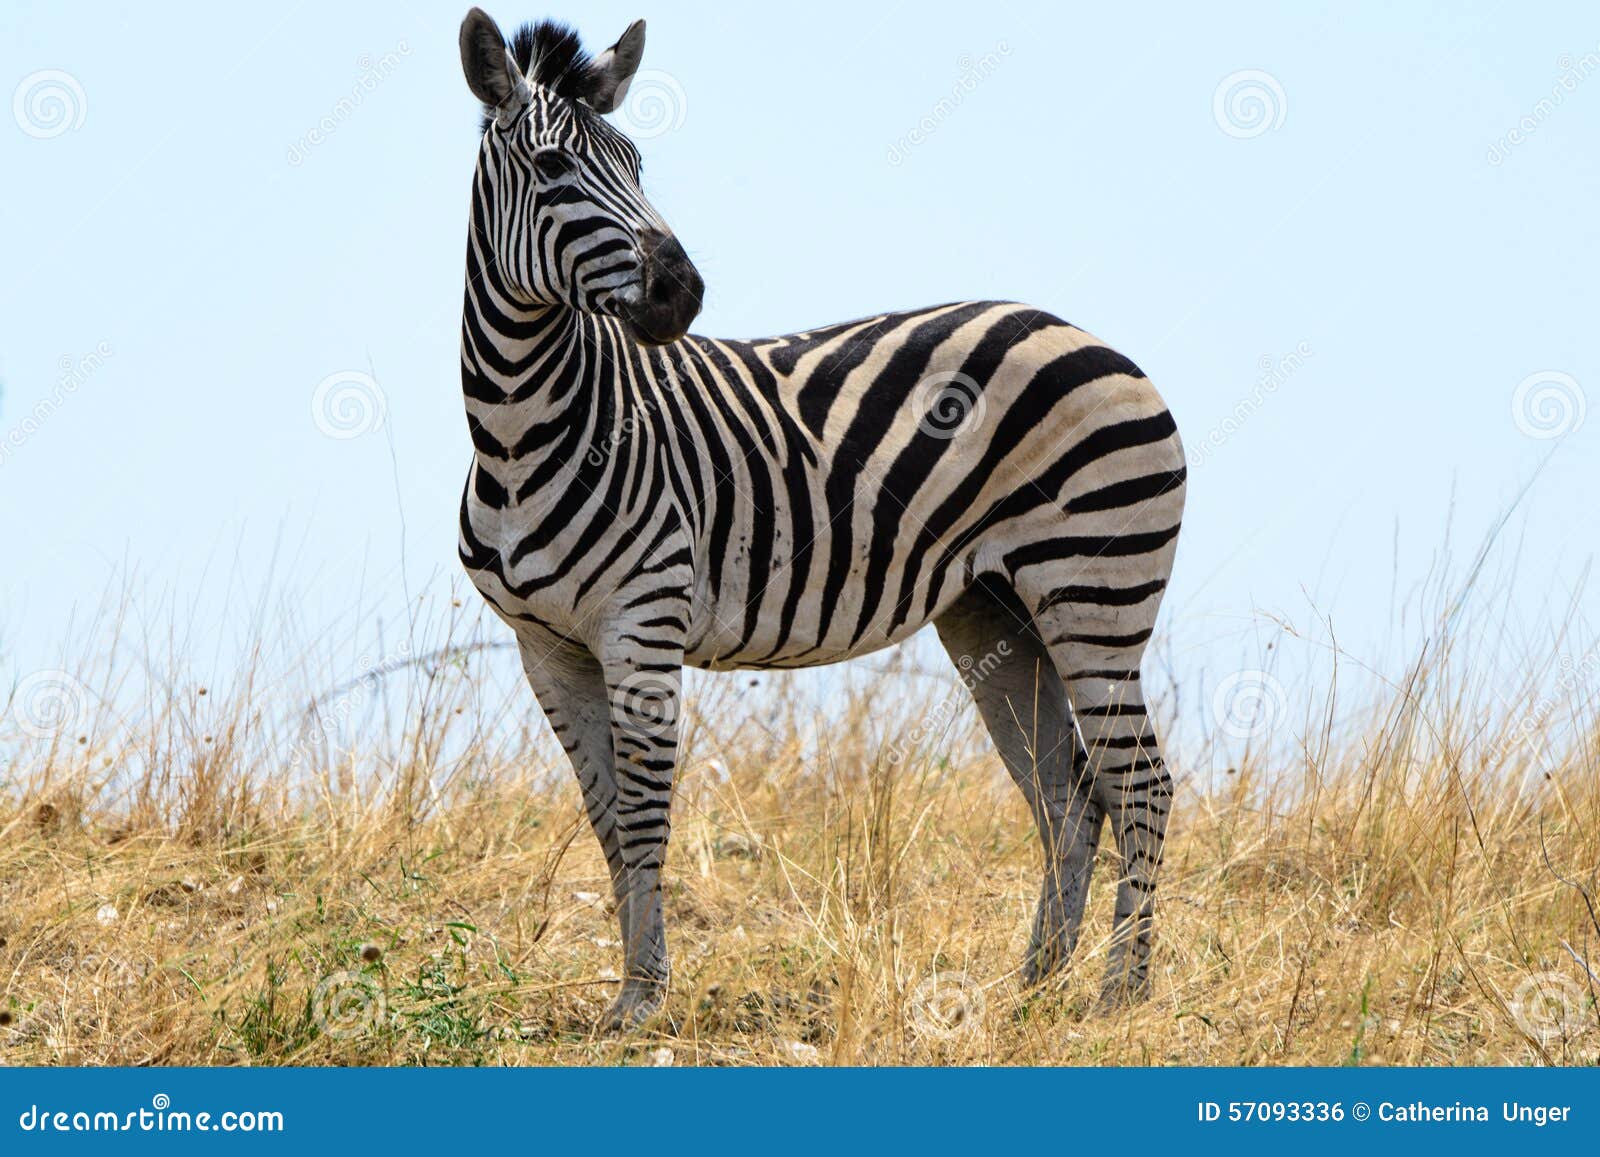 zebra in botswana